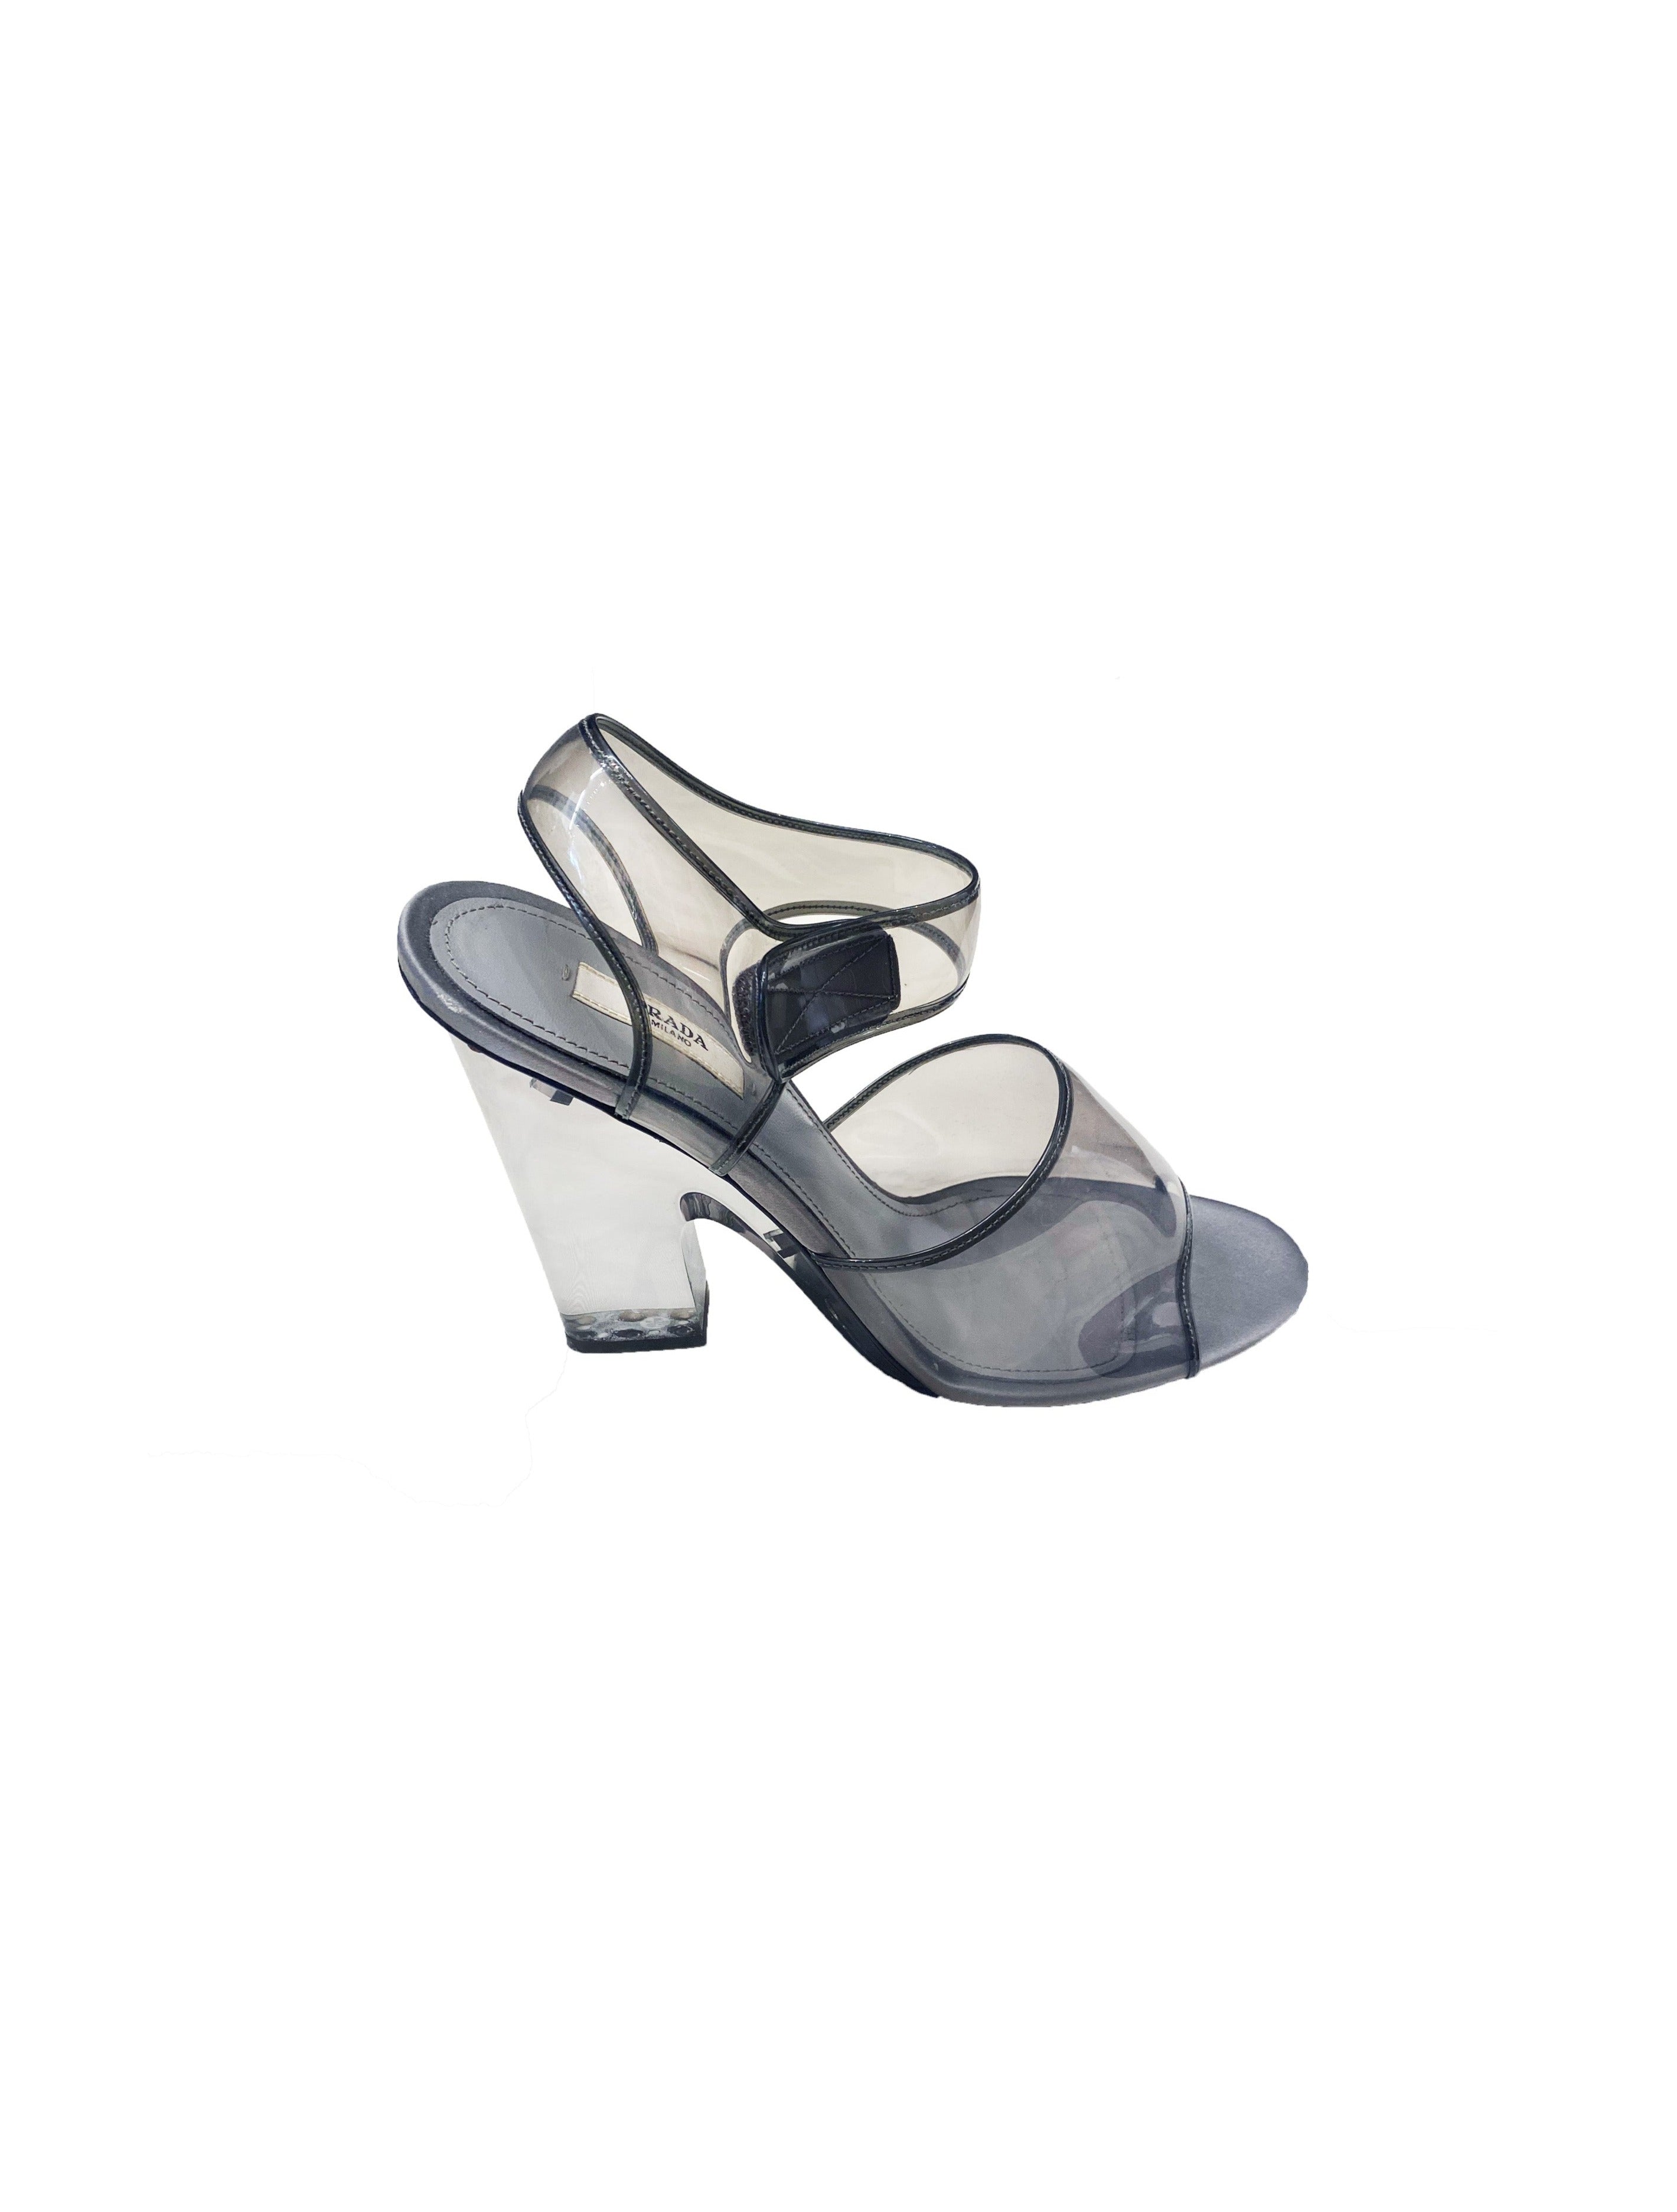 Prada SS 2010 Silver Acrylic Clear Heels